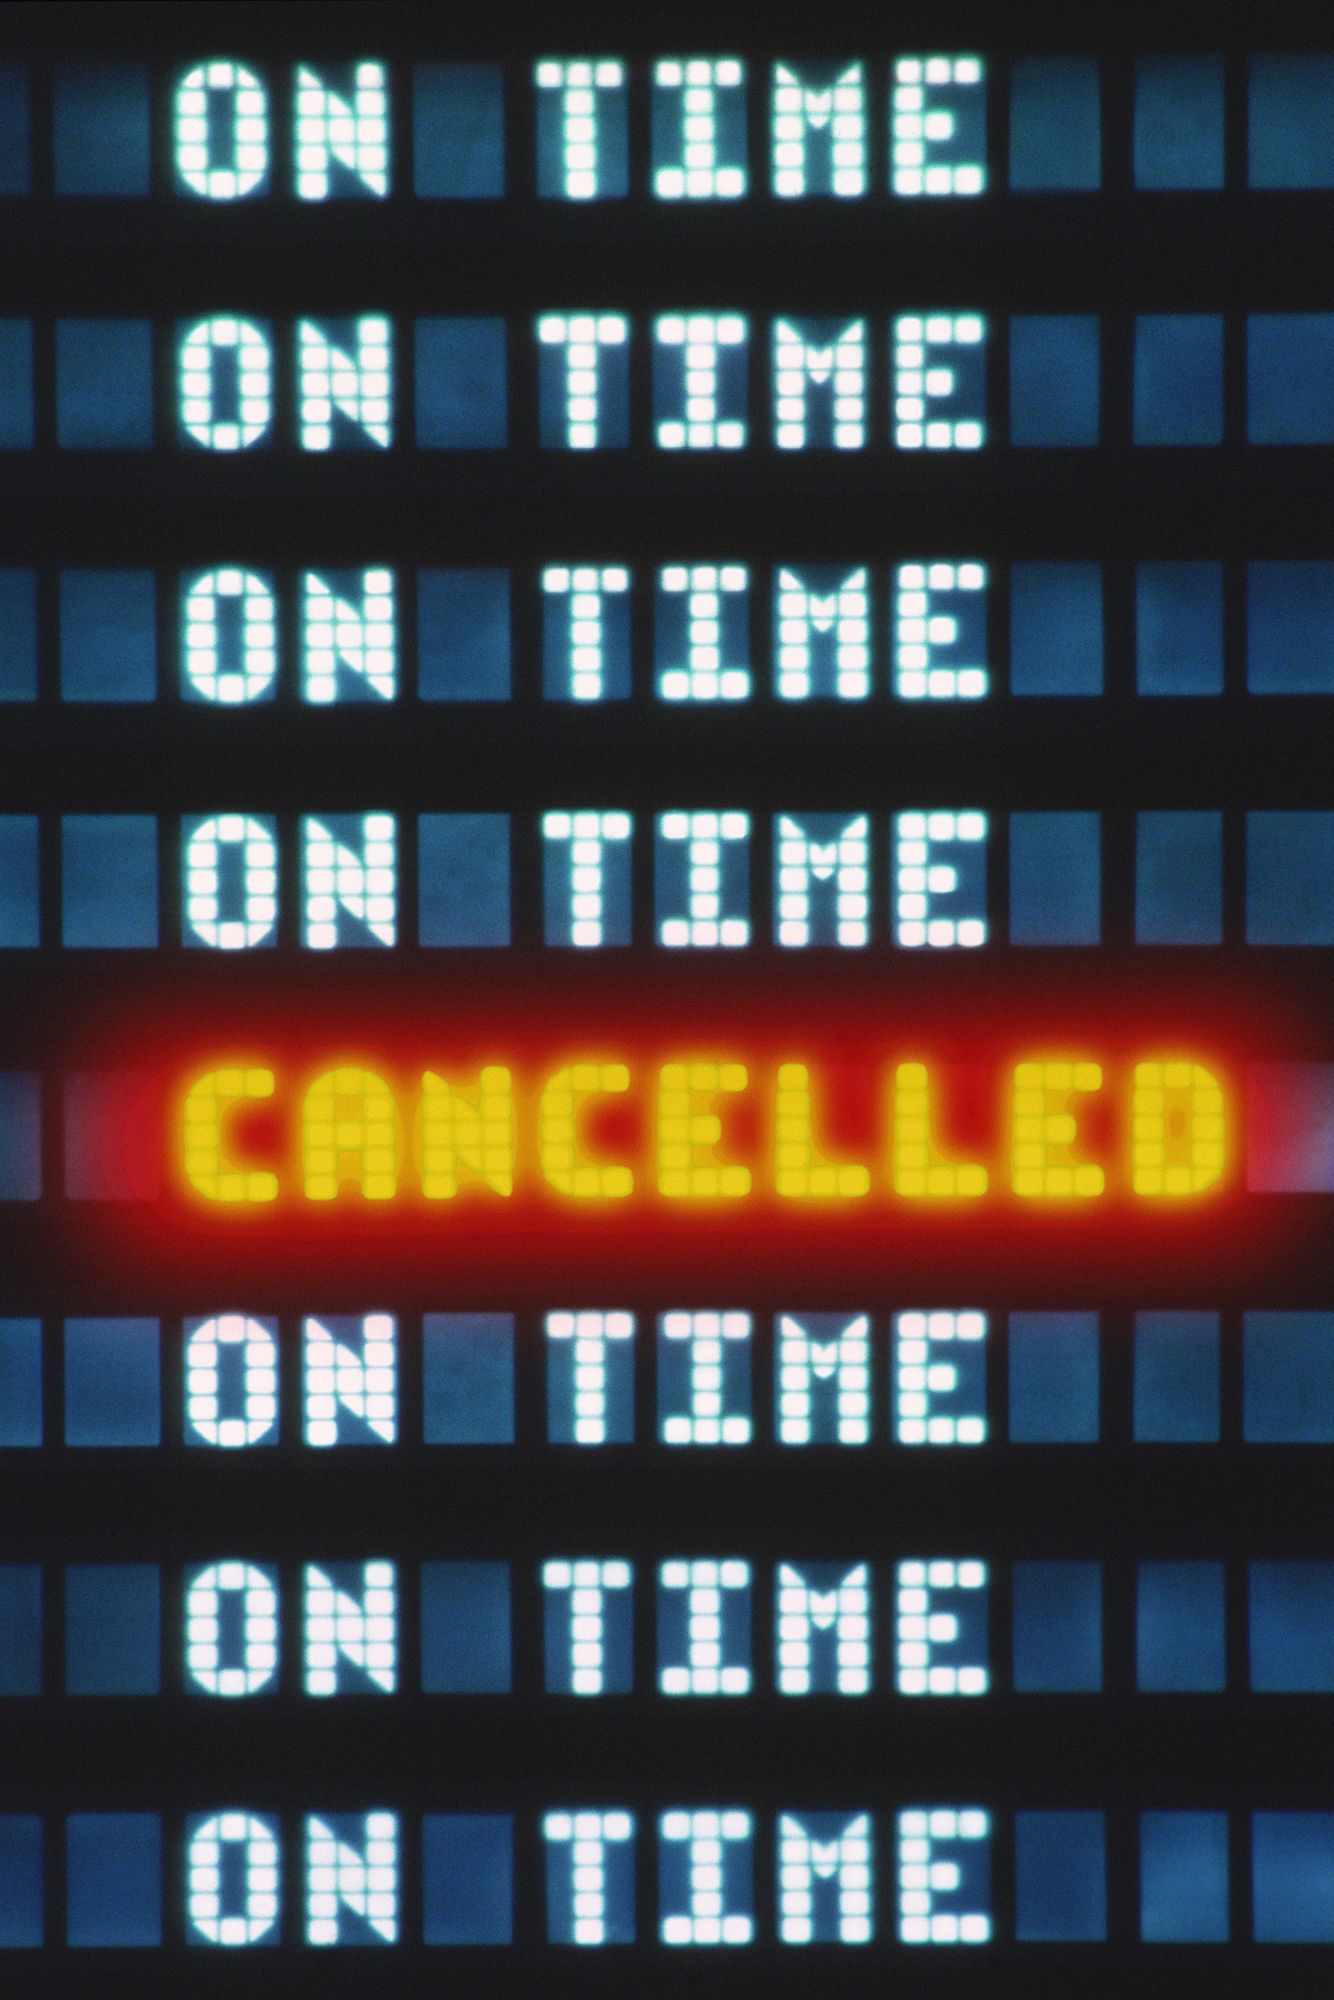 Թռիչքը չեղյալ է հայտարարվել օդանավակայանում